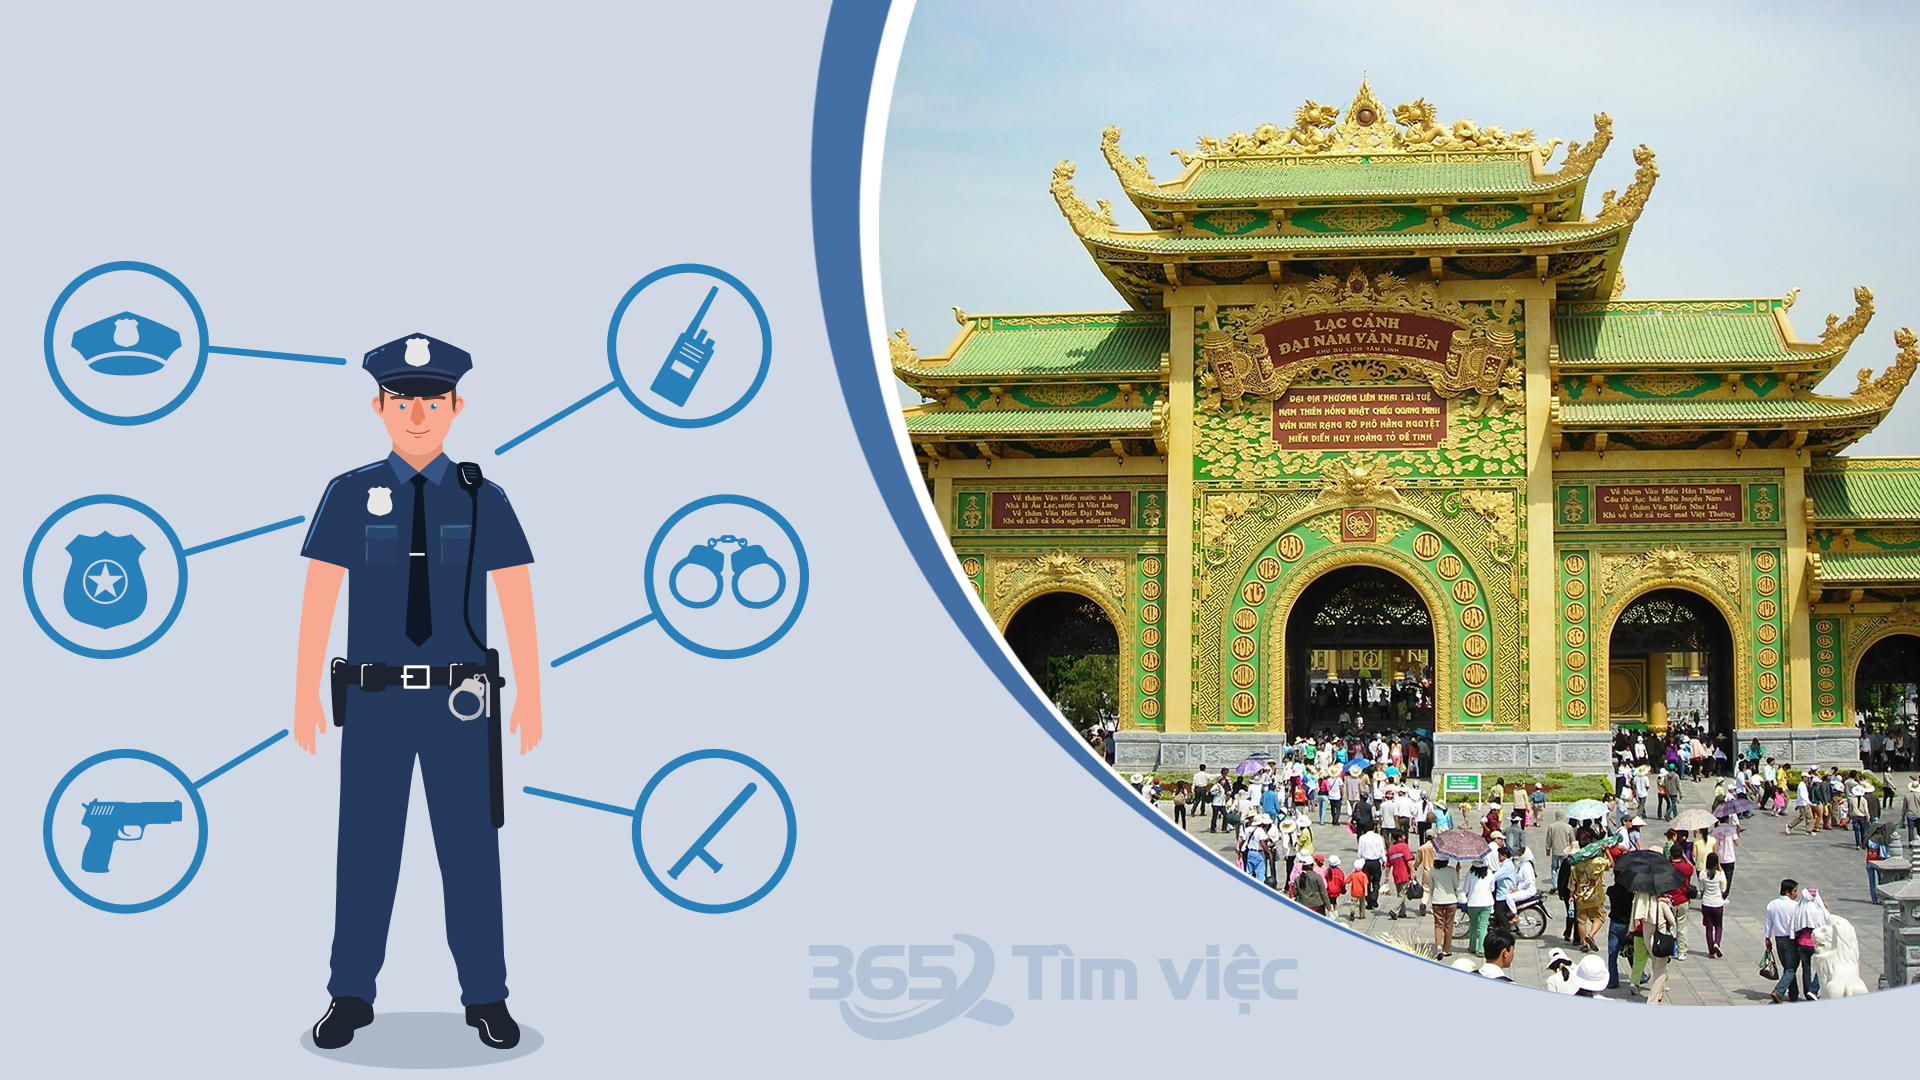 Tuyển dụng quản lý an ninh tại Ninh Thuận 